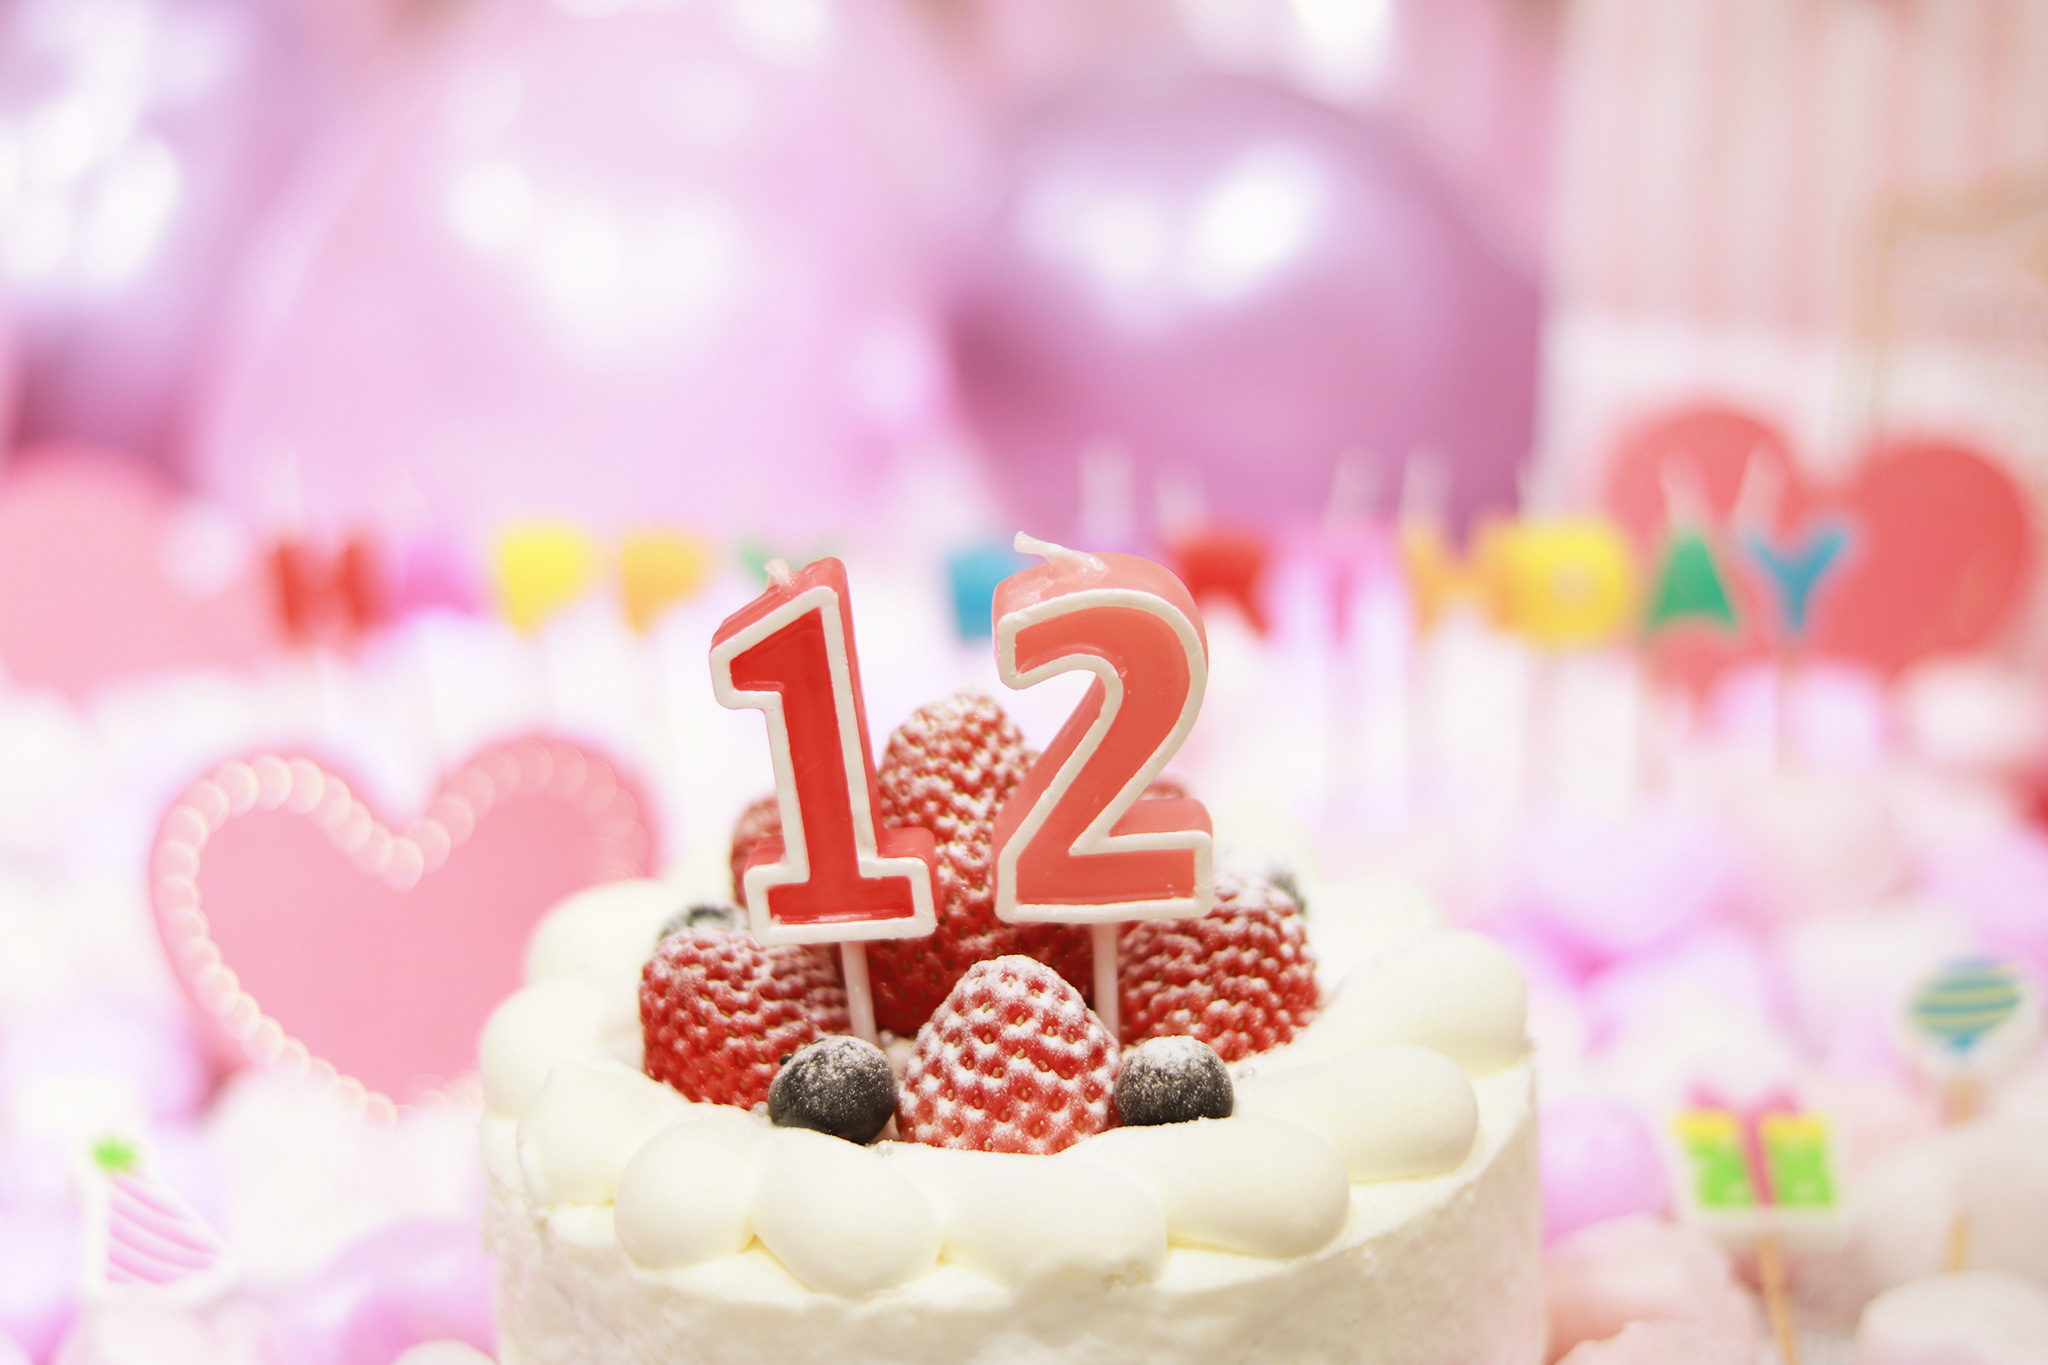 オシャレな誕生日画像 可愛いケーキとキャンドルでお祝い 12歳編 のフリー画像 おしゃれなフリー写真素材 Girly Drop